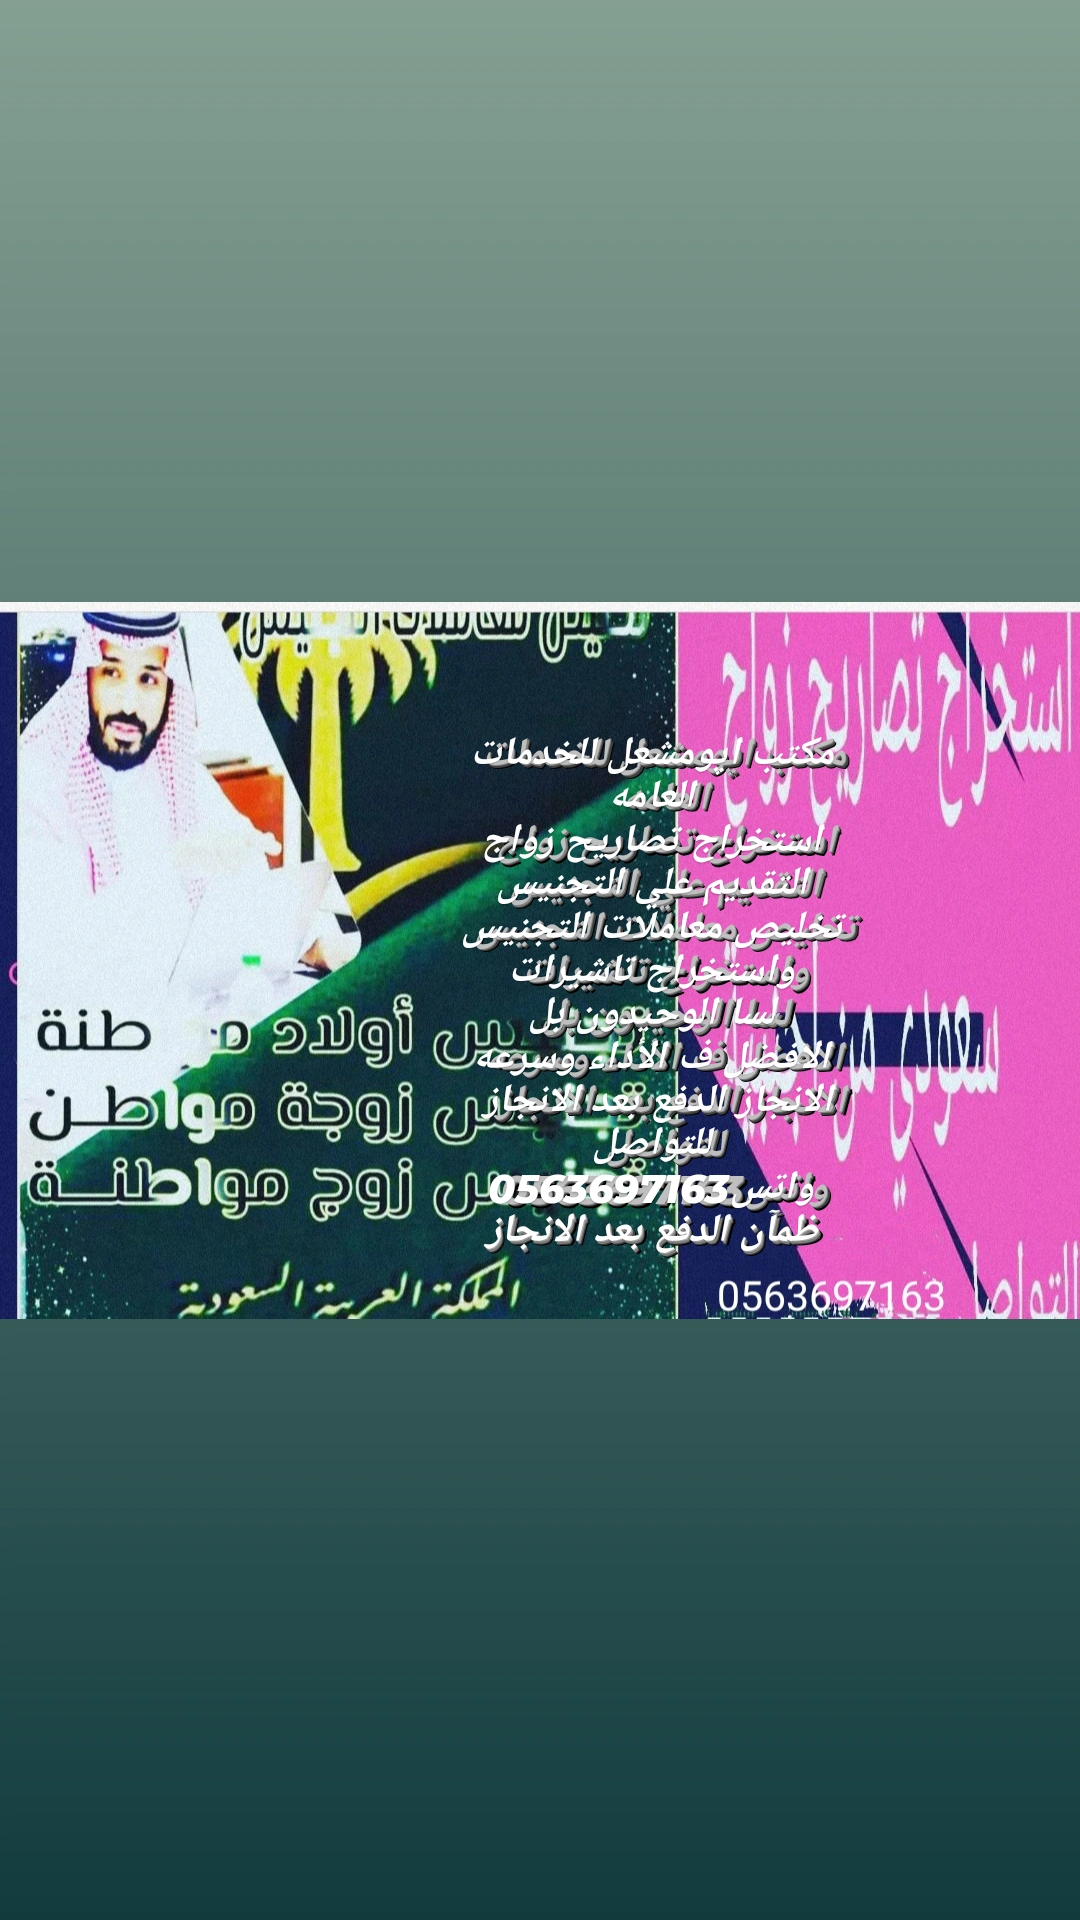 زواج سعودي من غير سعوديه من الخارج بتصريح مفتوح تخليص معاملات التجنيس انجاز فوري وسريع 